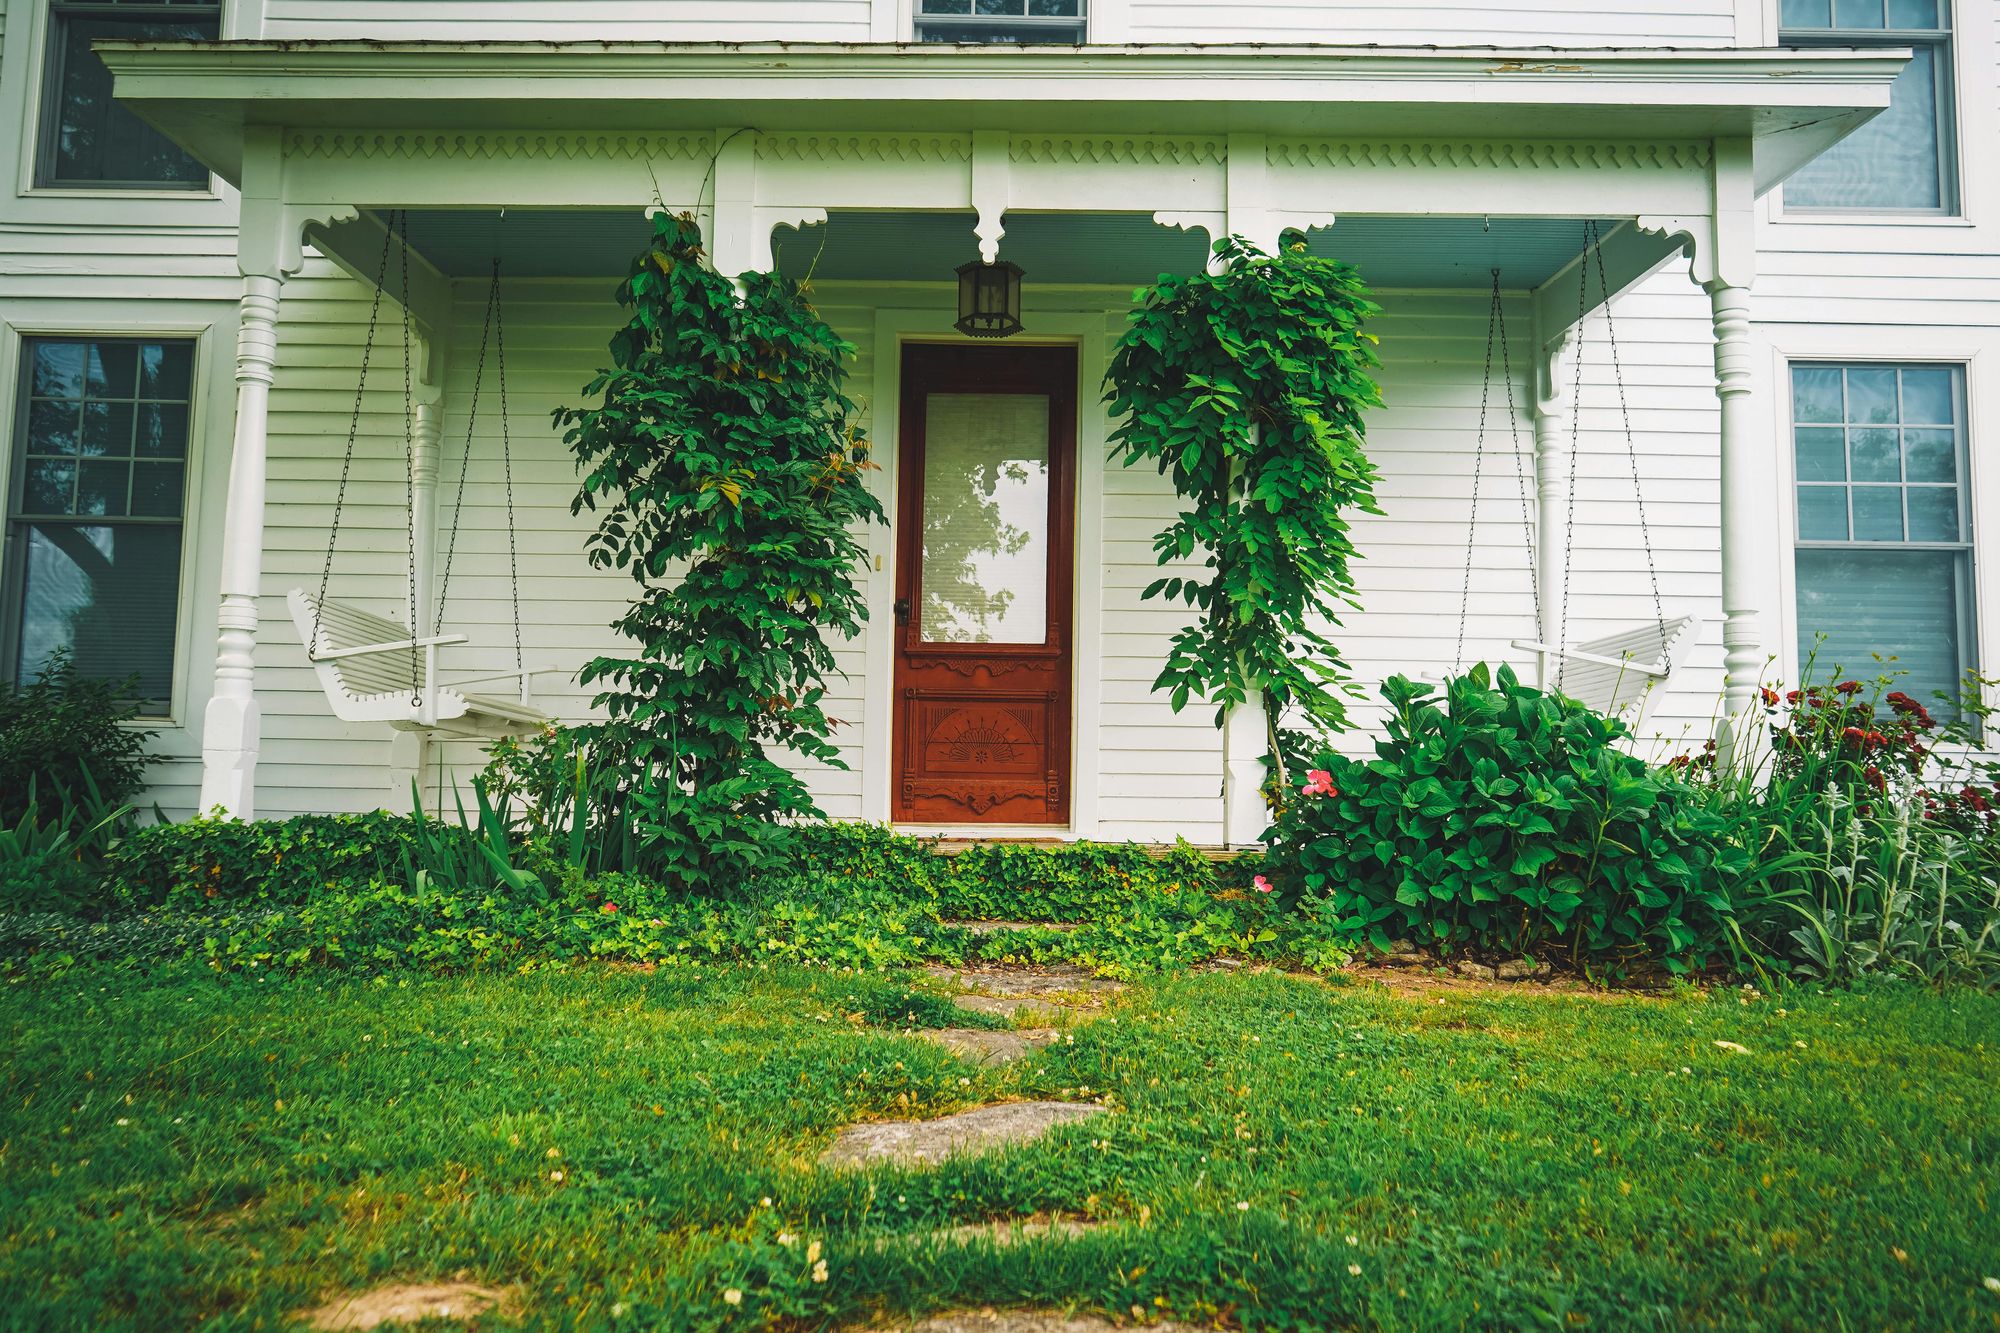 Entrada acolhedora de uma casa pequena e sustentável. Foto: Courtney Sargent no Pexels